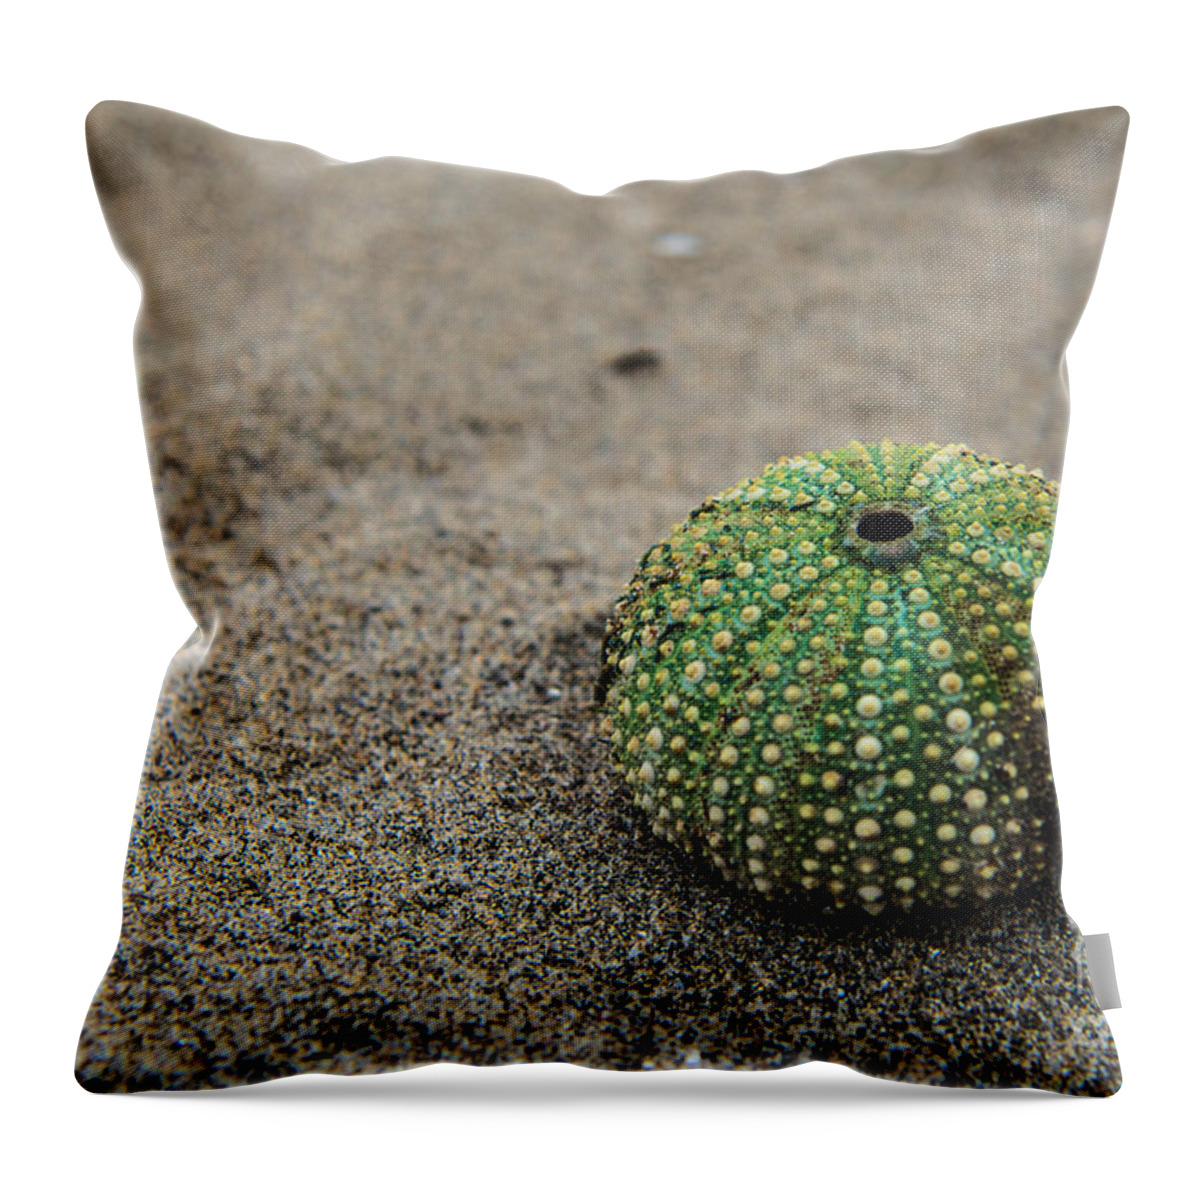 Friaul-julisch Venetien Throw Pillow featuring the photograph Sea Urchin by Hannes Cmarits